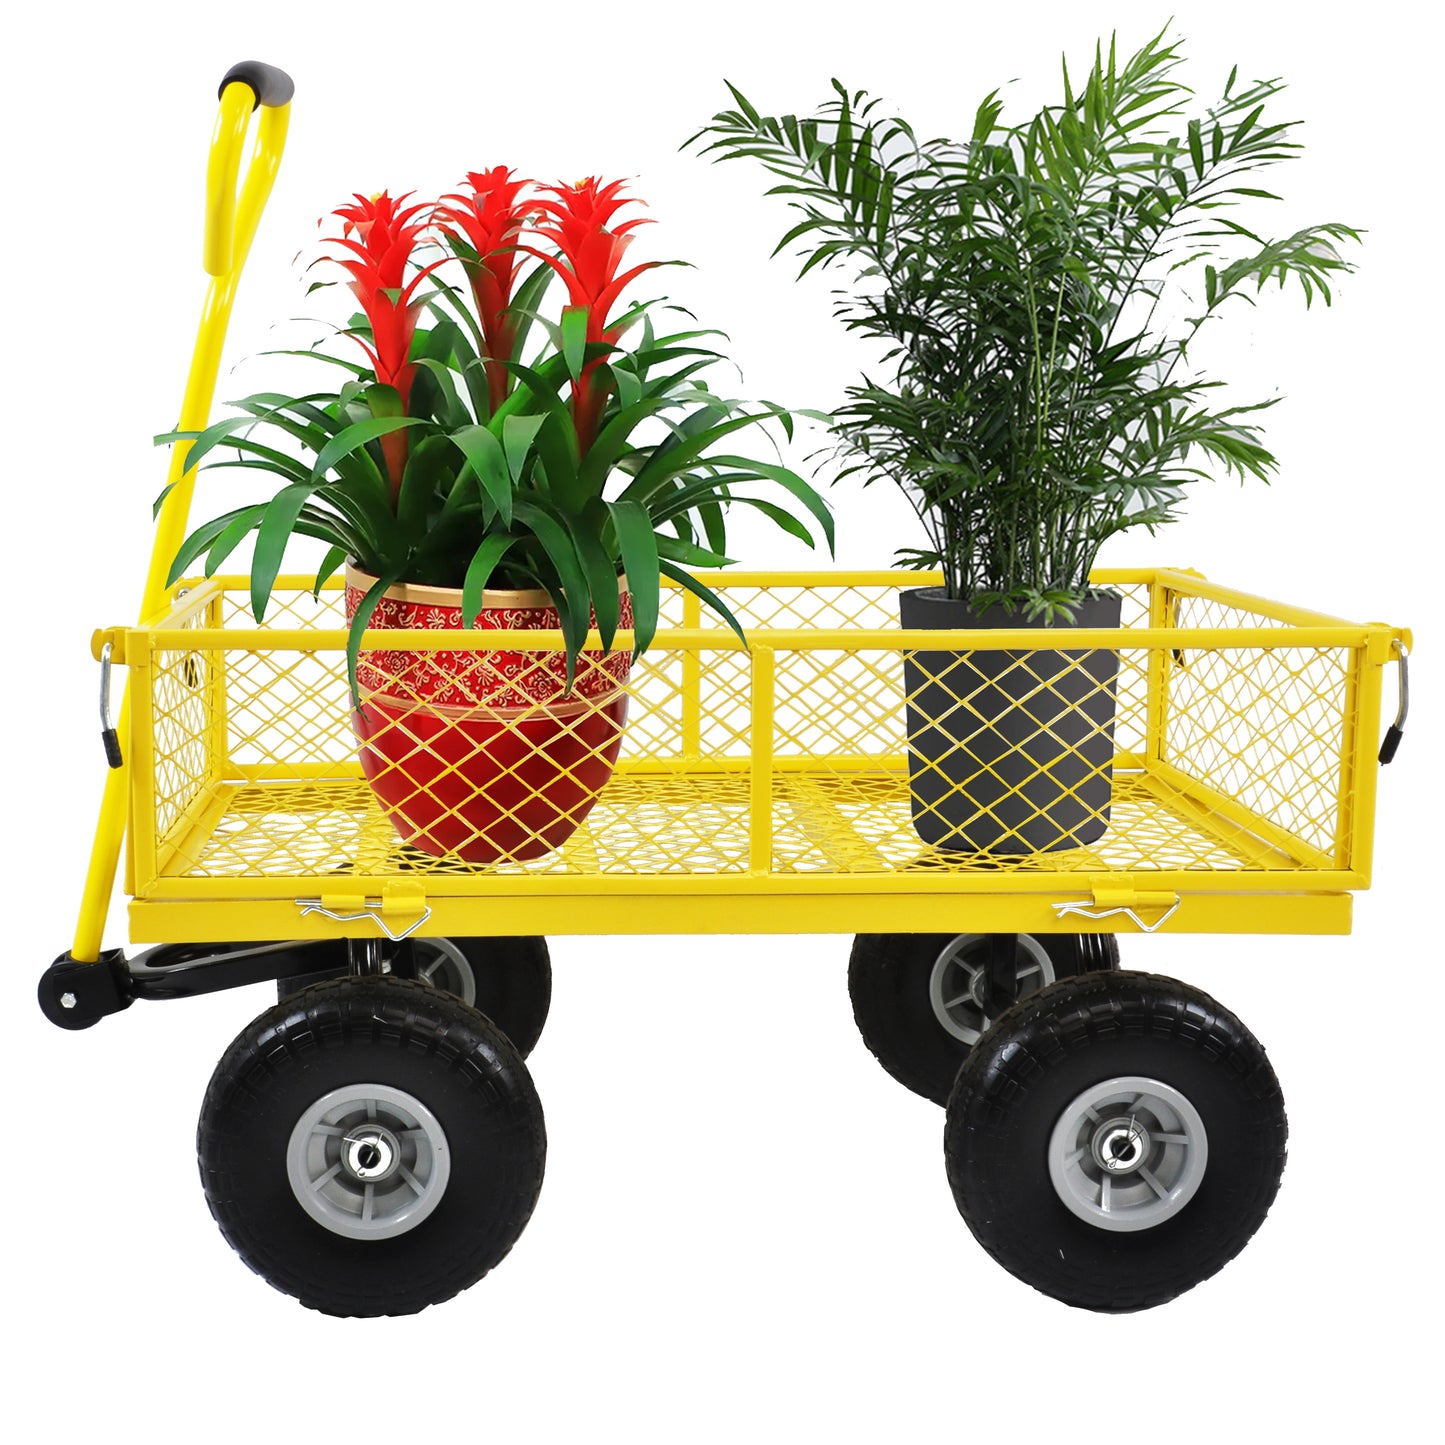 Tool truck, truck, garden truck, truck, easier to transport firewood, PU wheel (yellow)